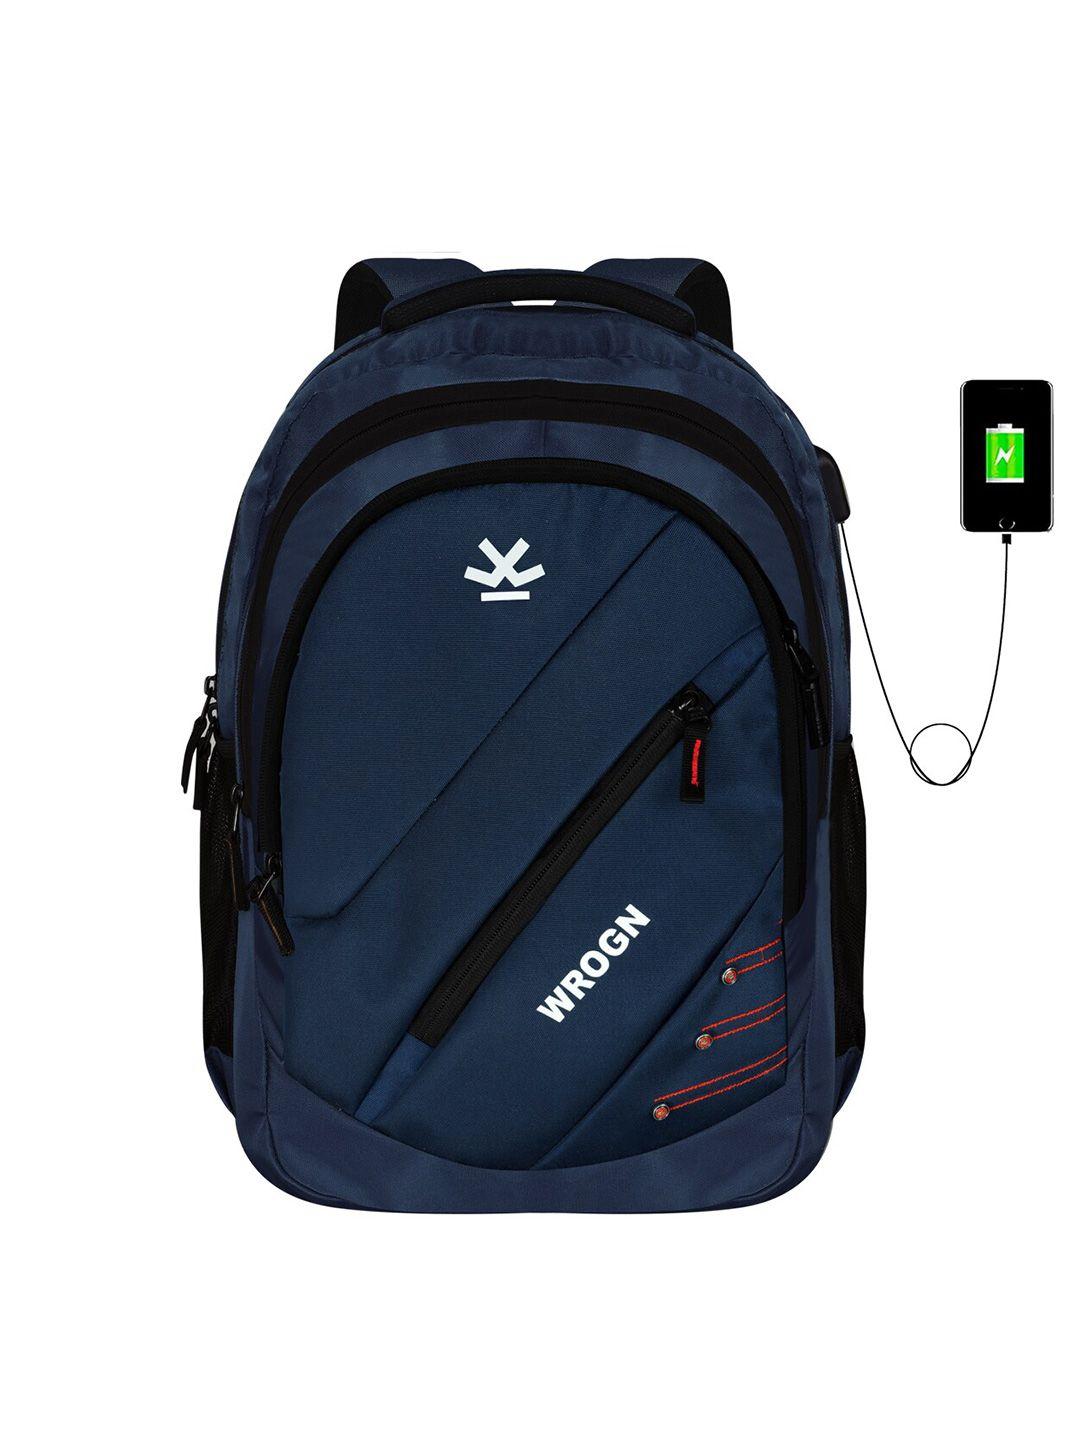 wrogn unisex navy blue & white brand logo backpack